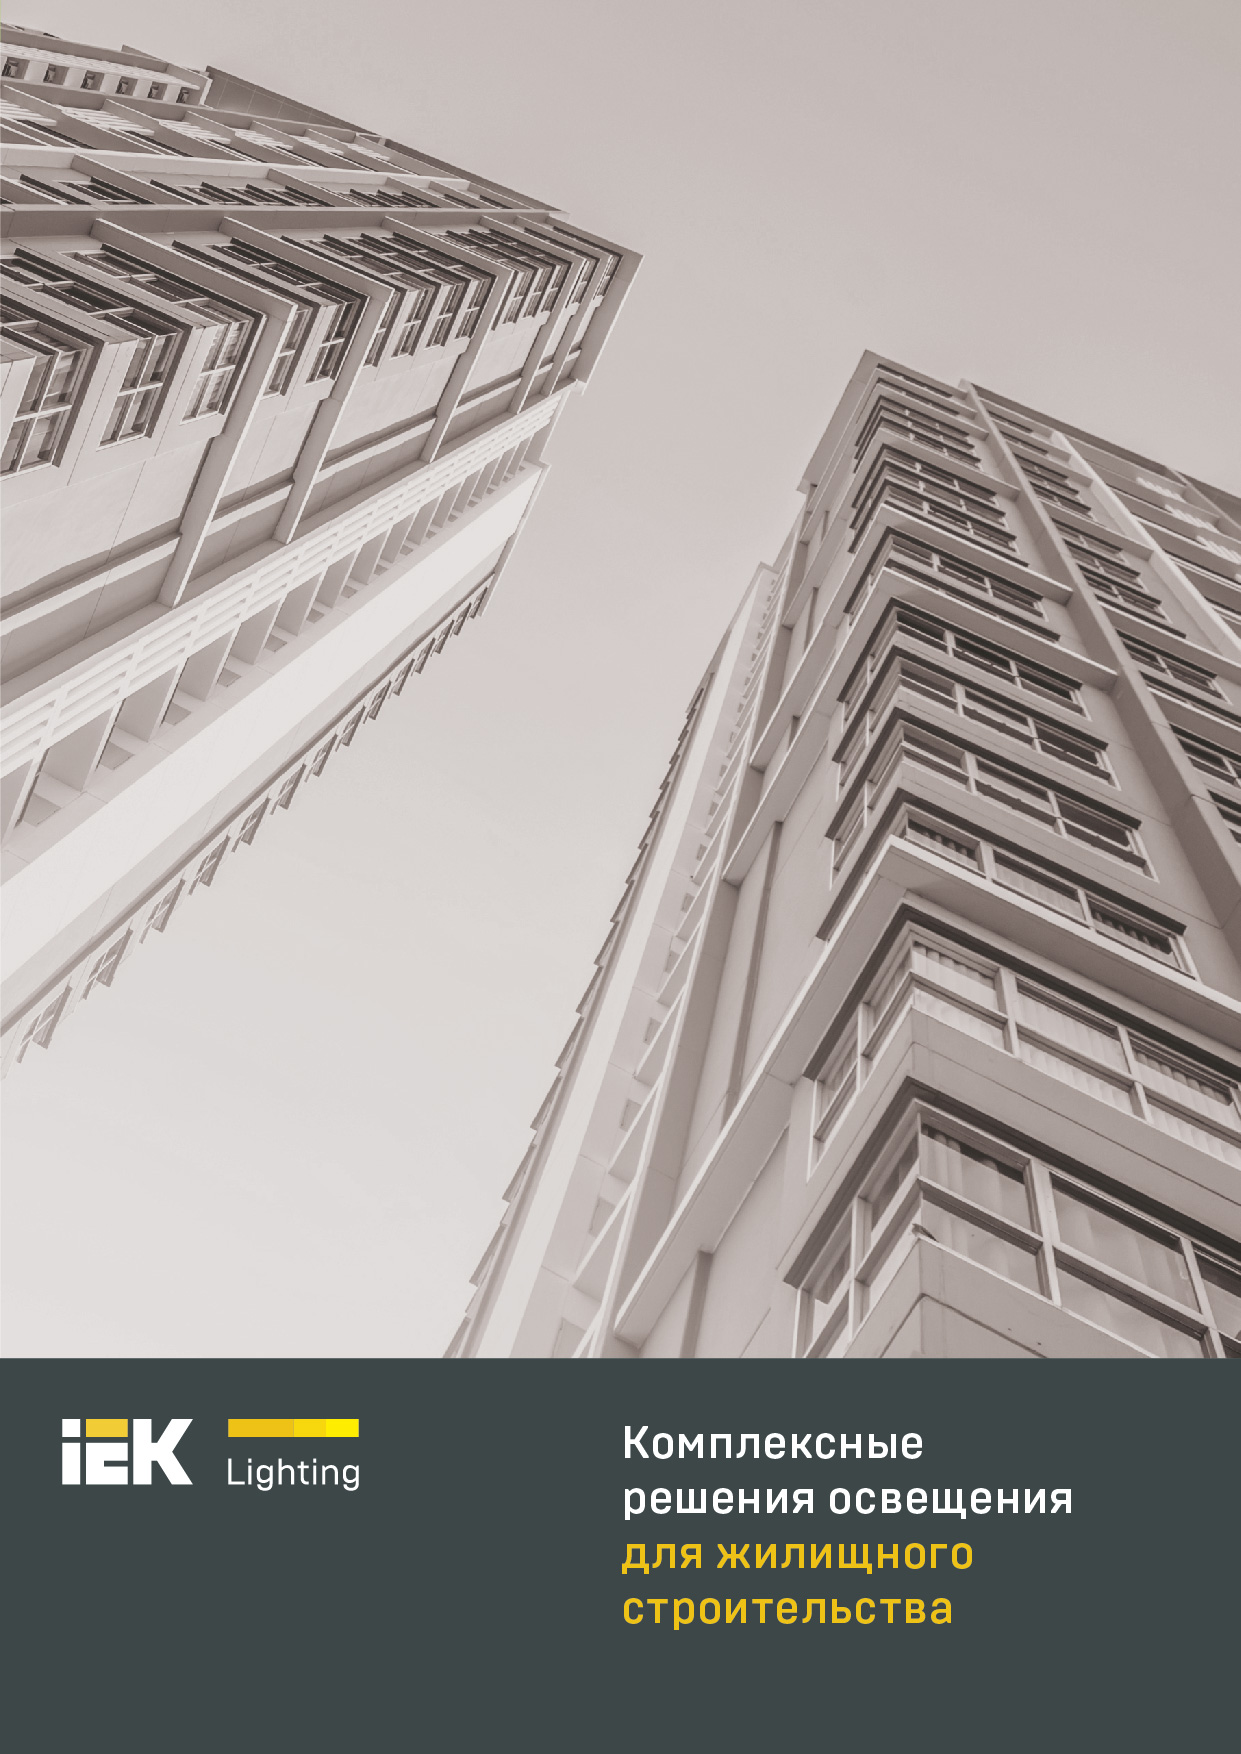 Новая отраслевая брошюра IEK Lighting для жилищного строительства